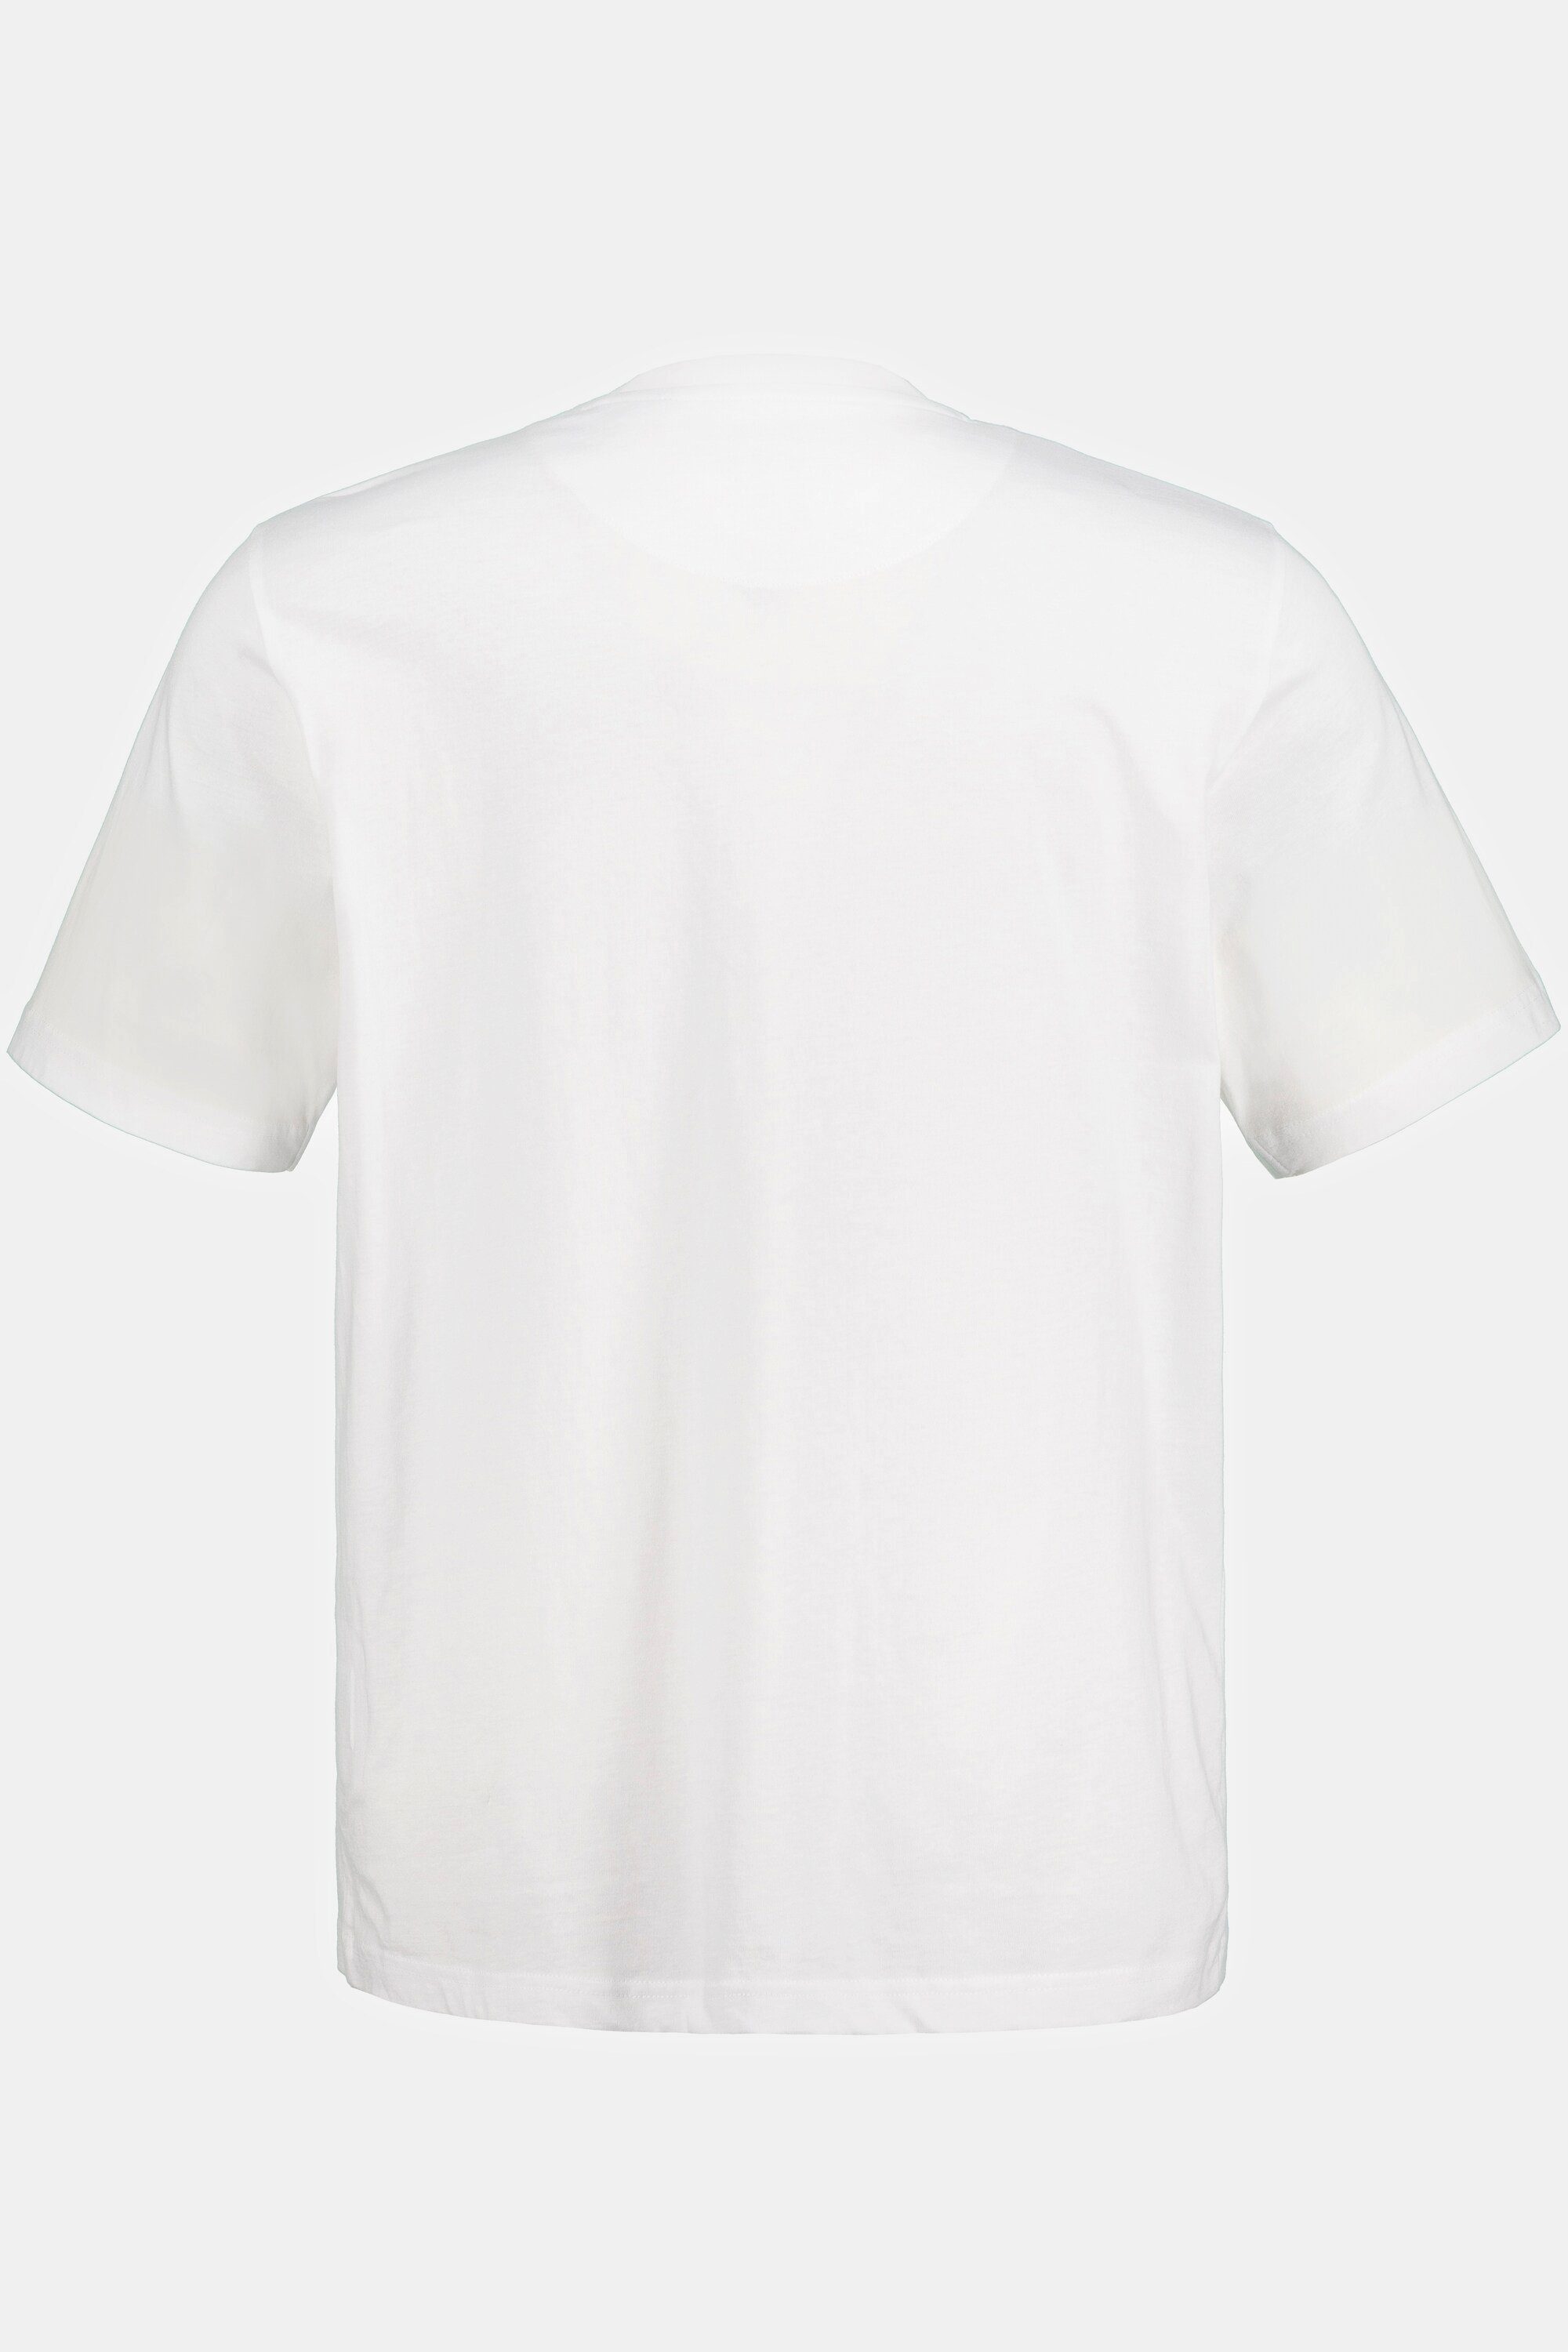 Halbarm schneeweiß JP1880 T-Shirt T-Shirt Brusttasche